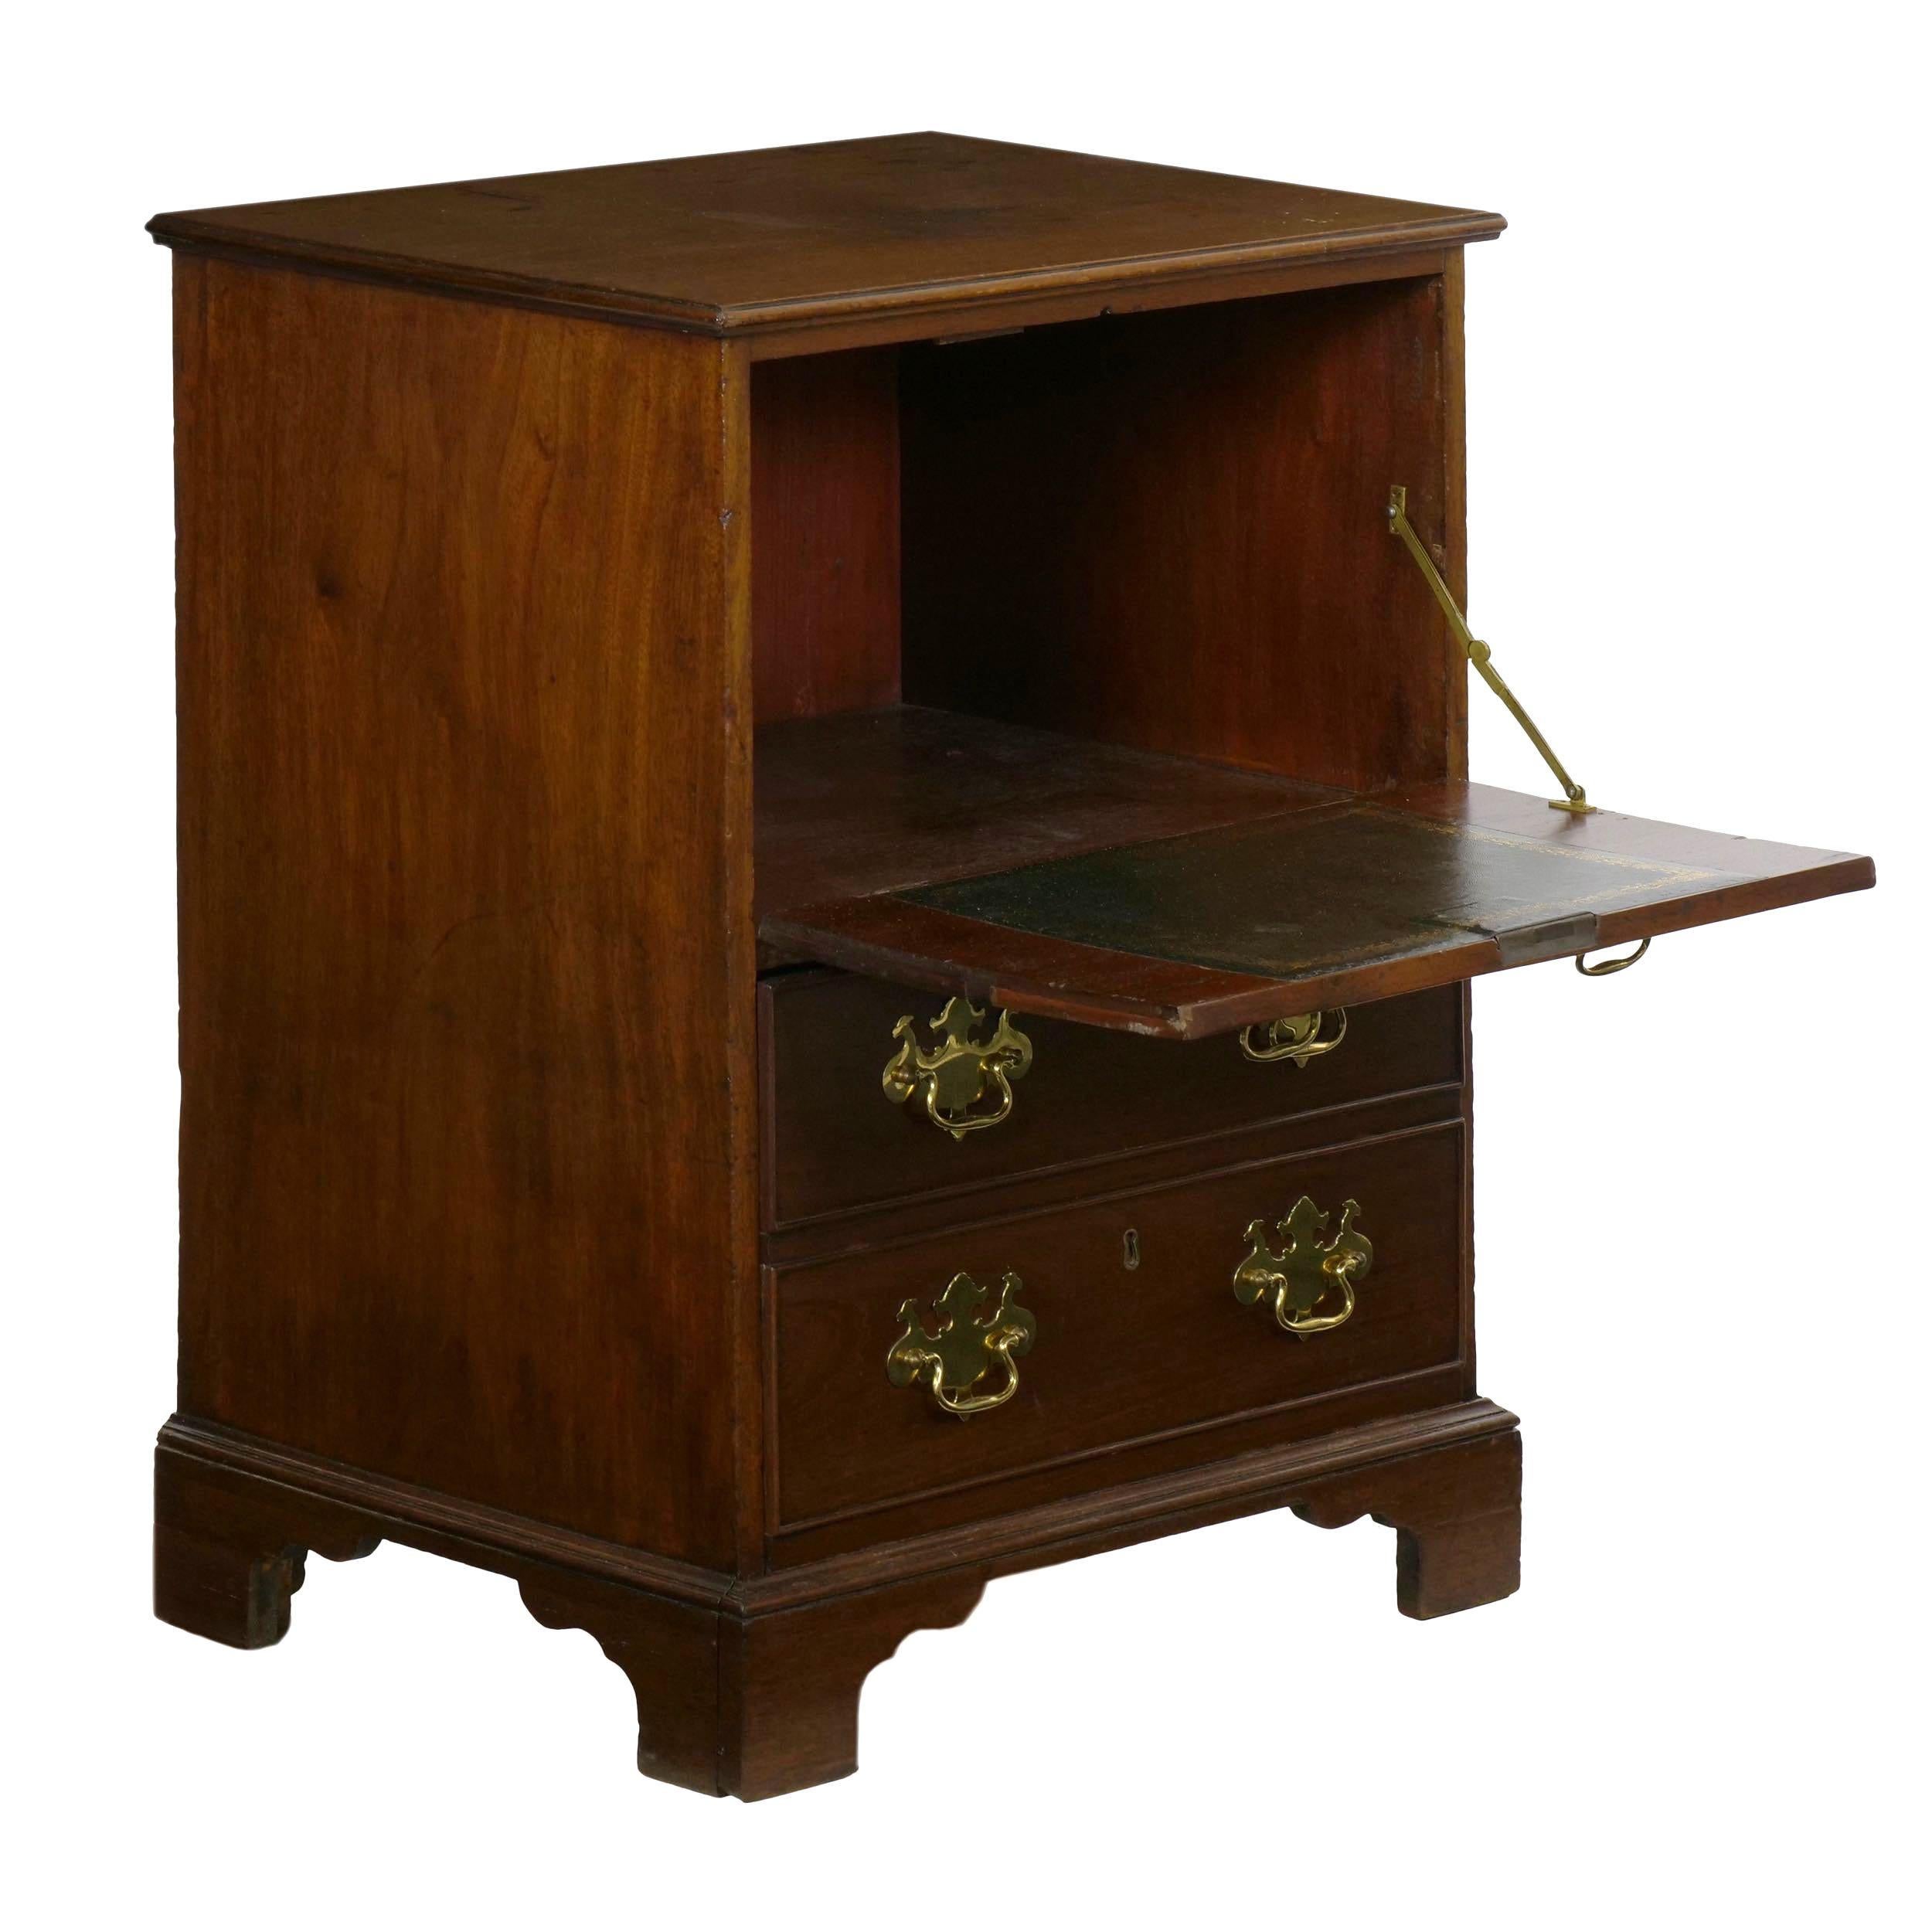 Der attraktive Nachttisch wurde so angepasst und verändert, dass er eine reiche George-III-Ästhetik und eine natürliche, gealterte Oberflächenpatina aufweist und gleichzeitig eine einzigartige und nützliche Form hat. Die 